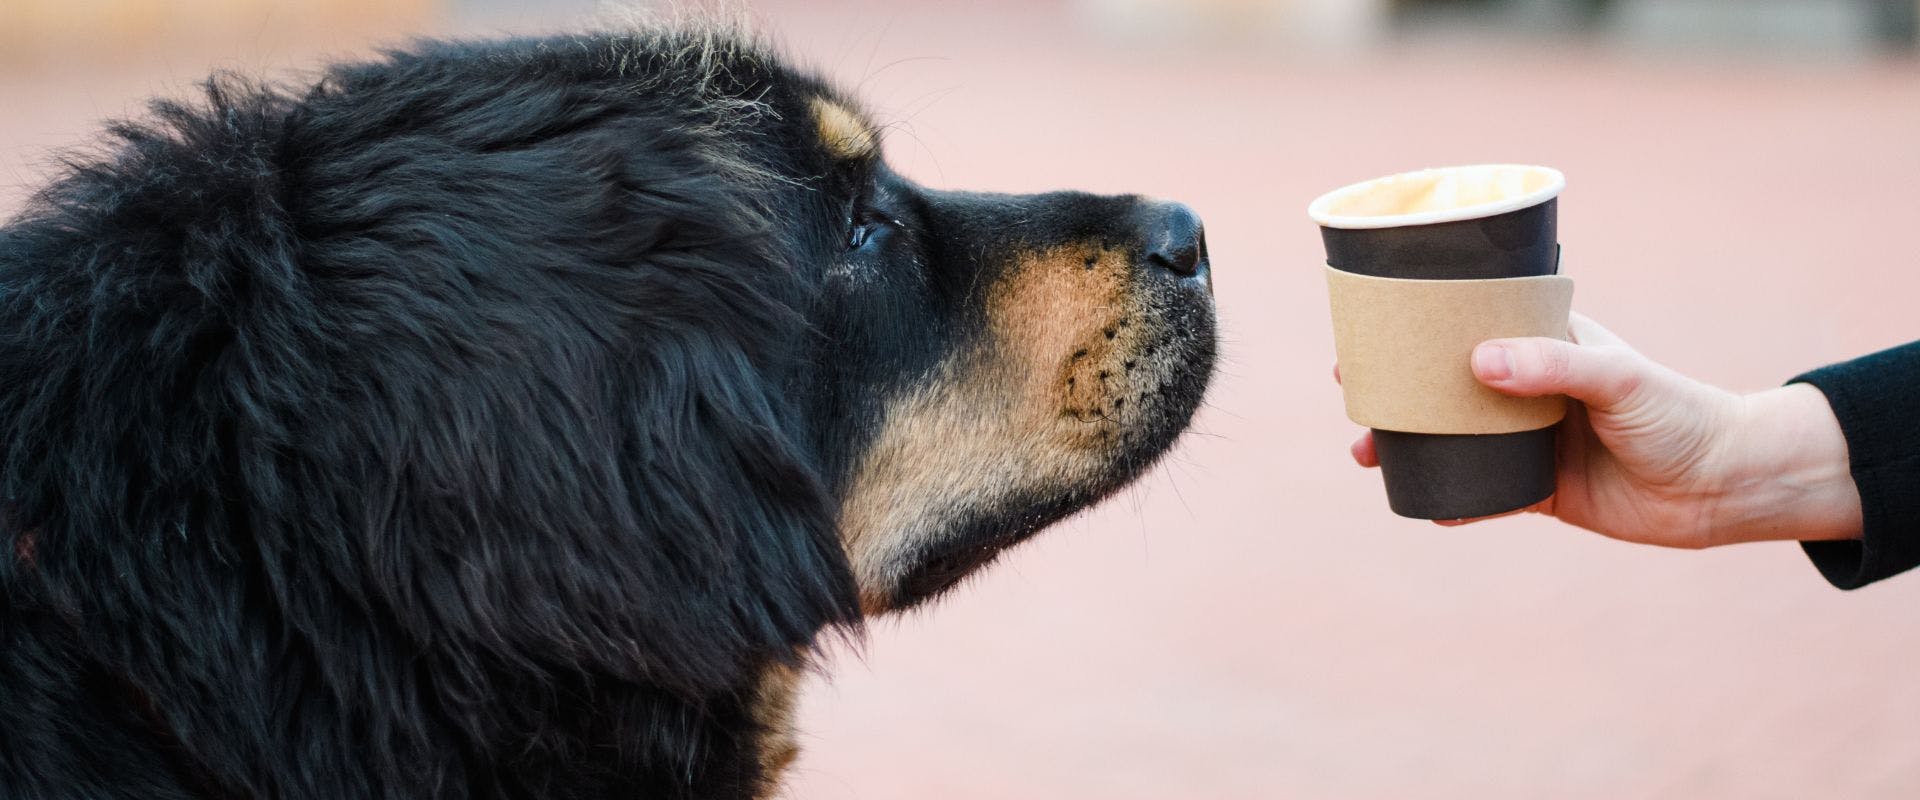 Black dog sniffing a latte